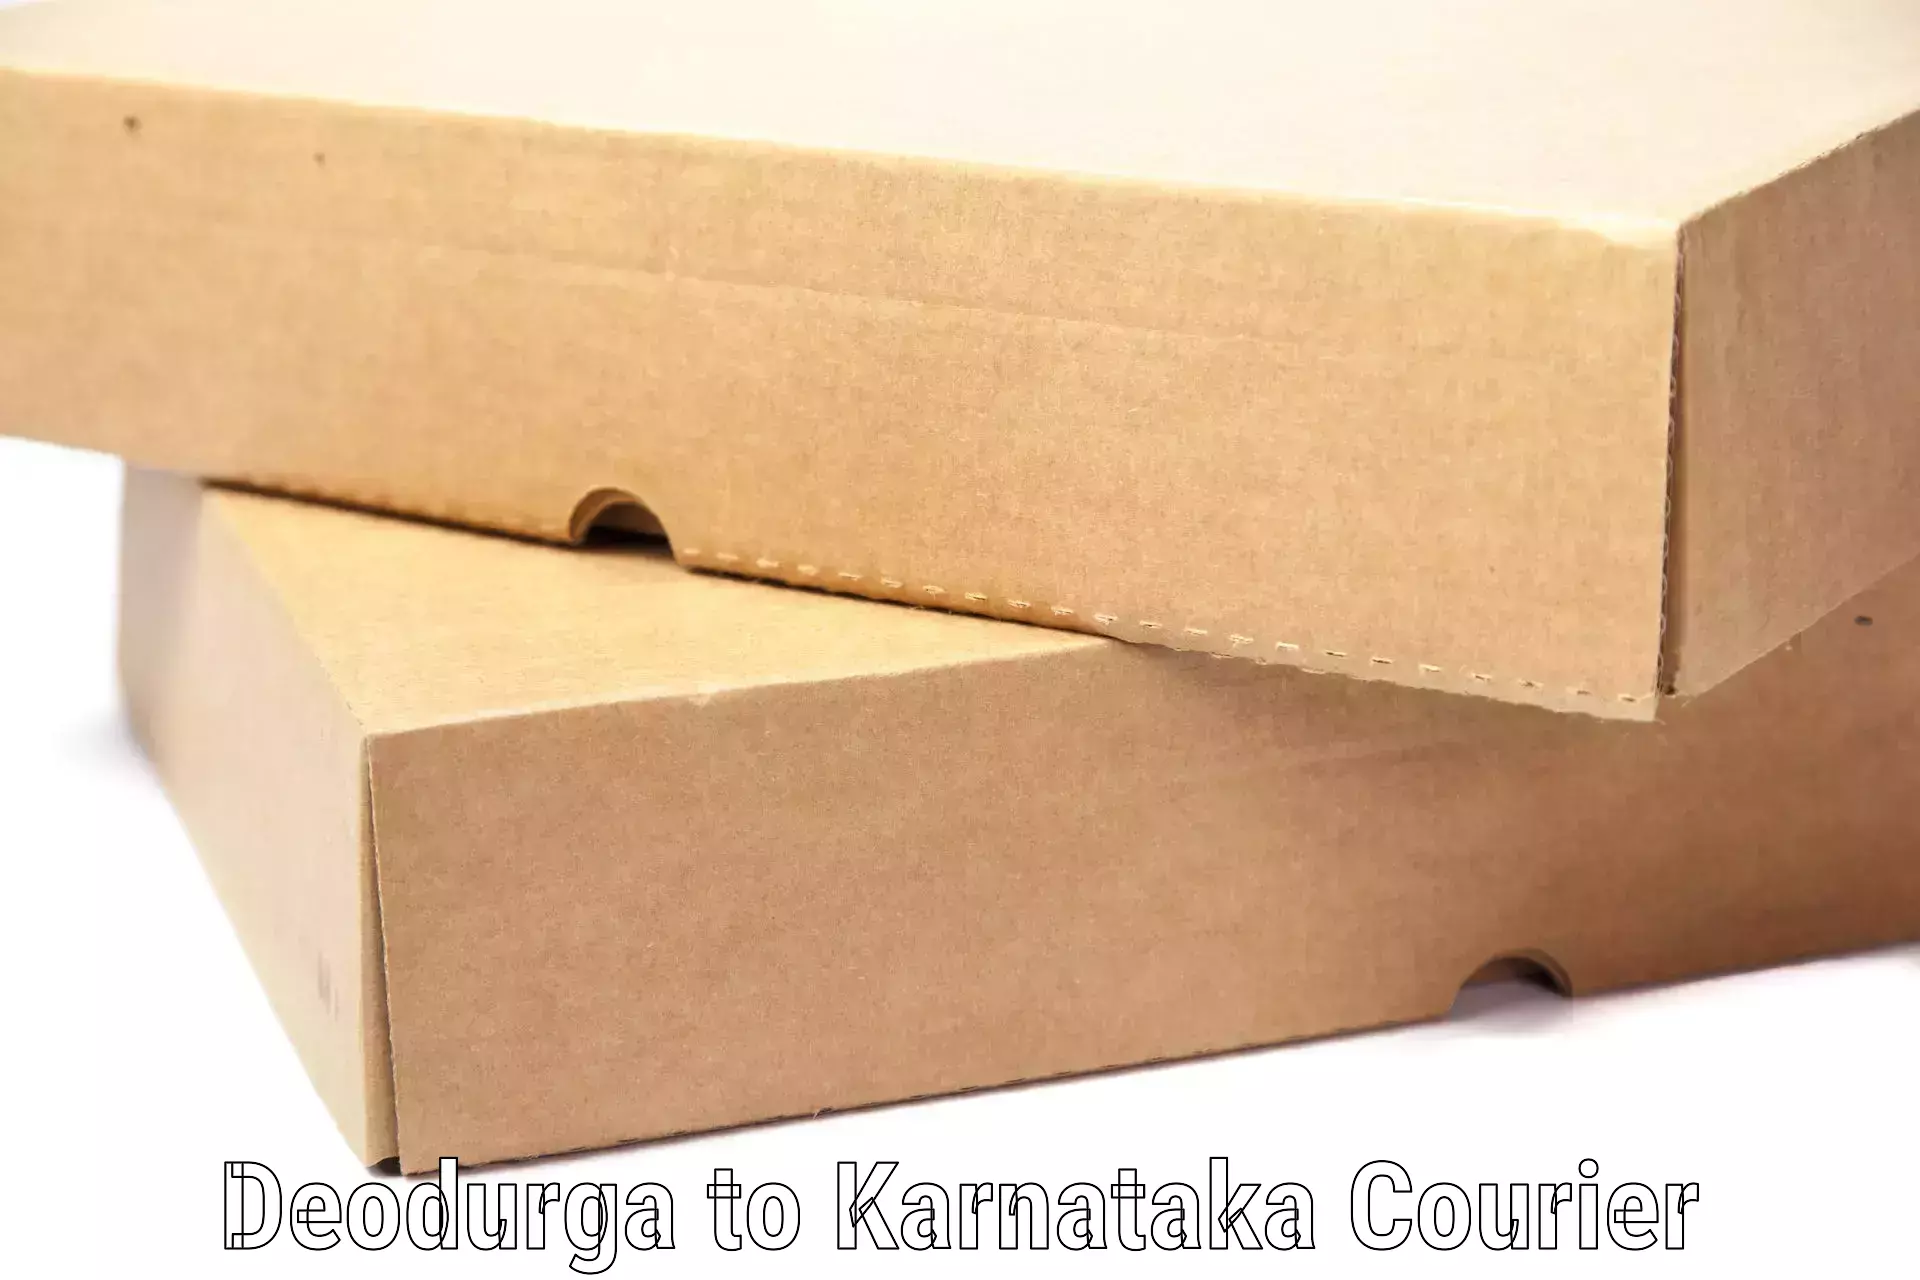 Light baggage courier in Deodurga to Karnataka